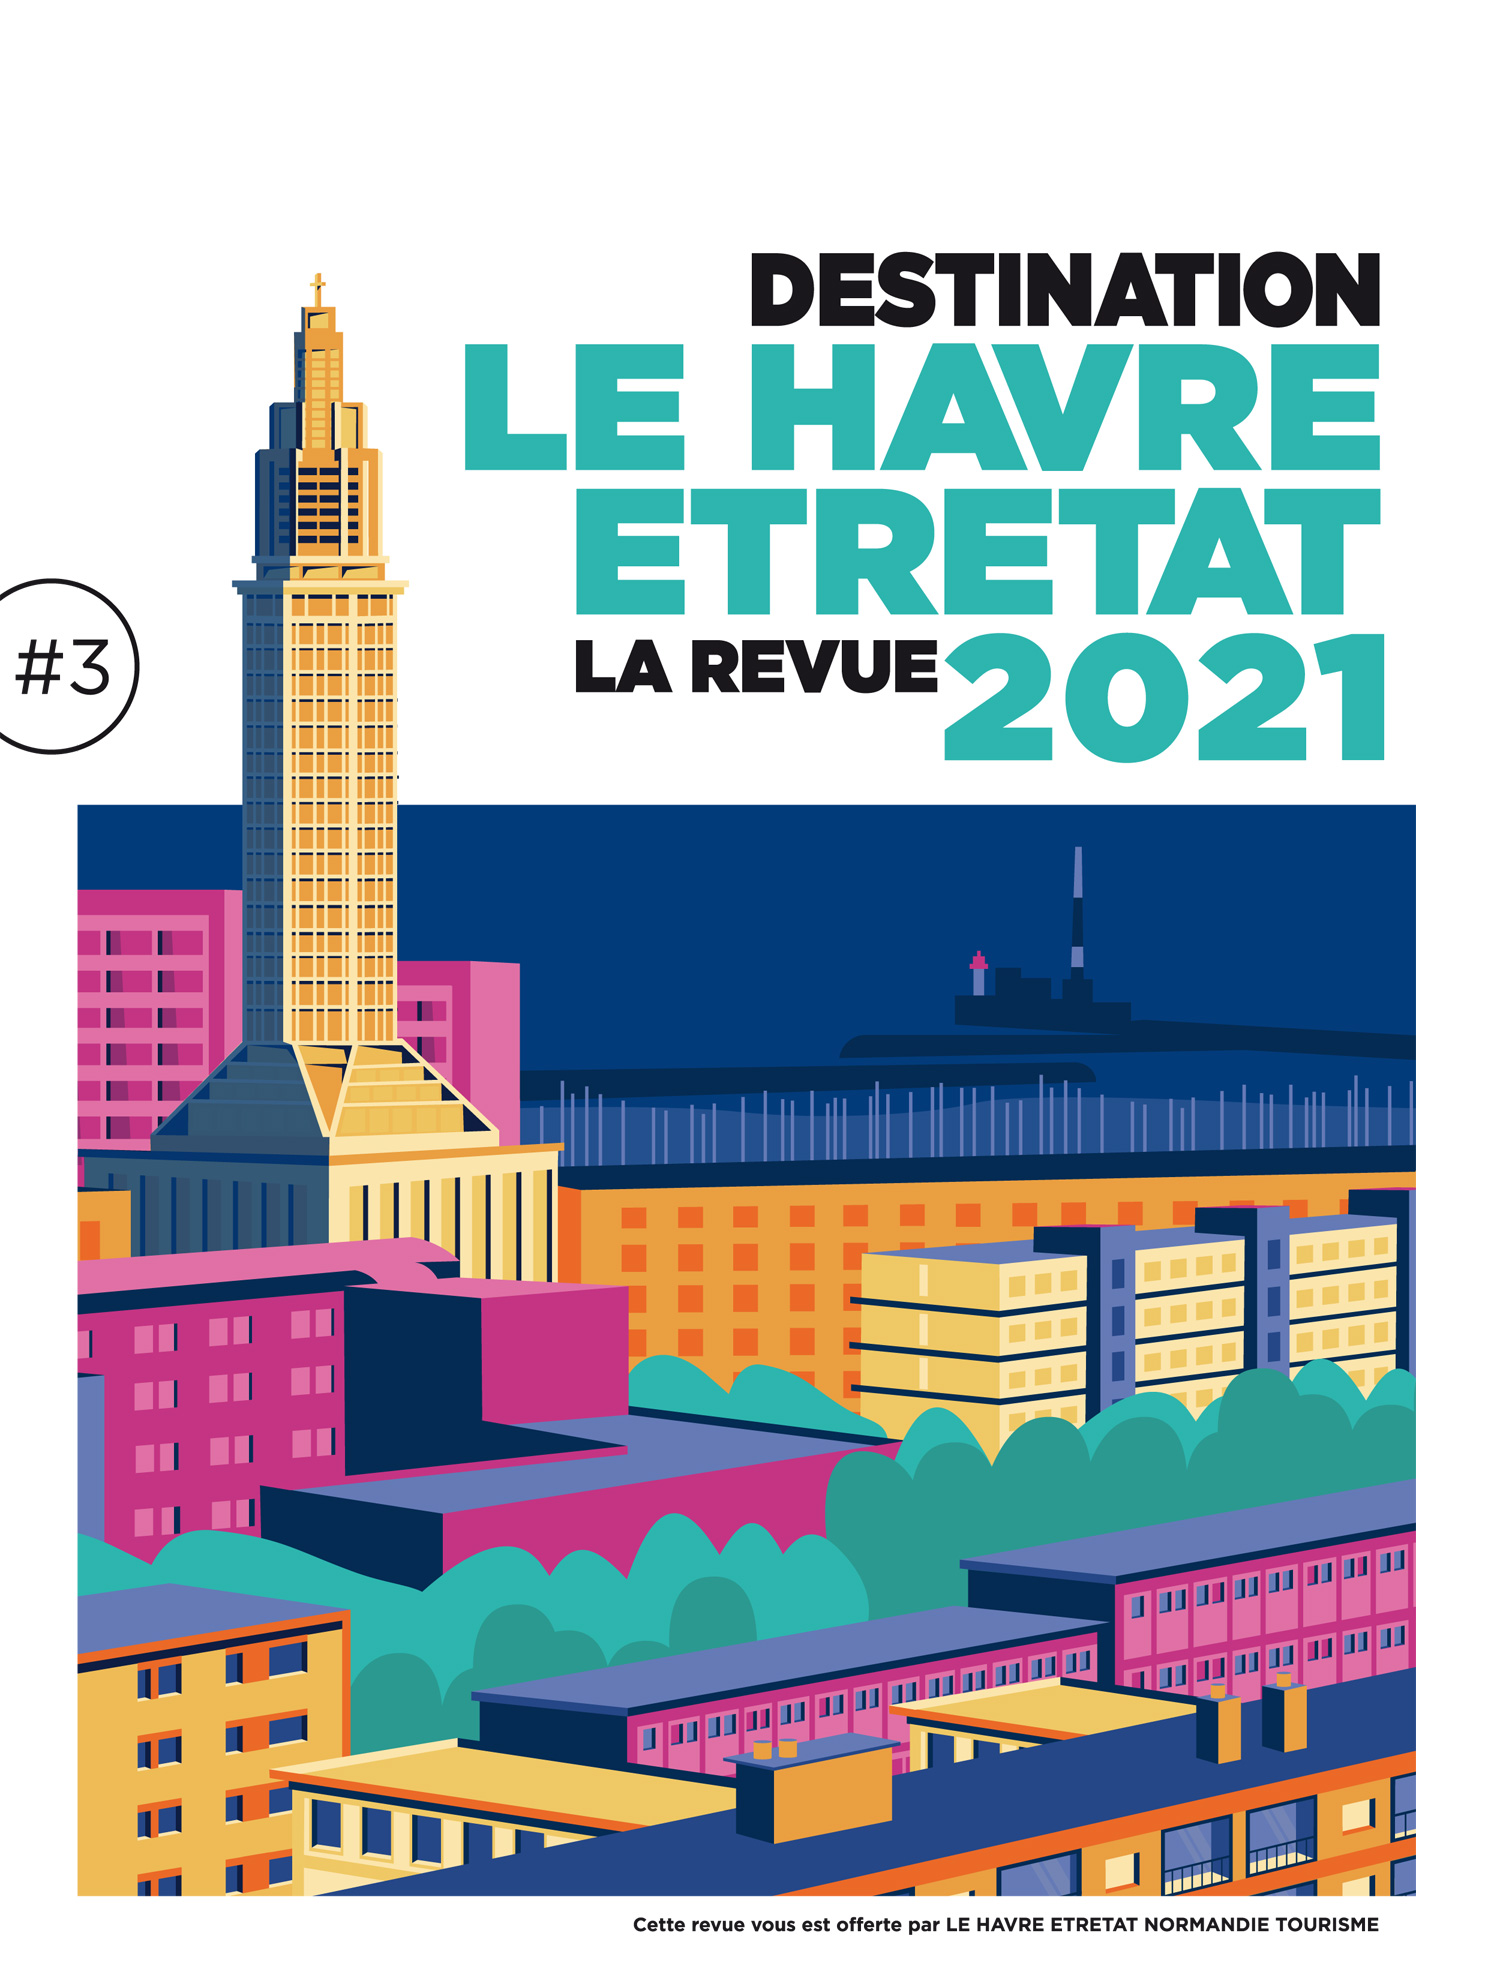 Le Havre Etretat La Revue 2021